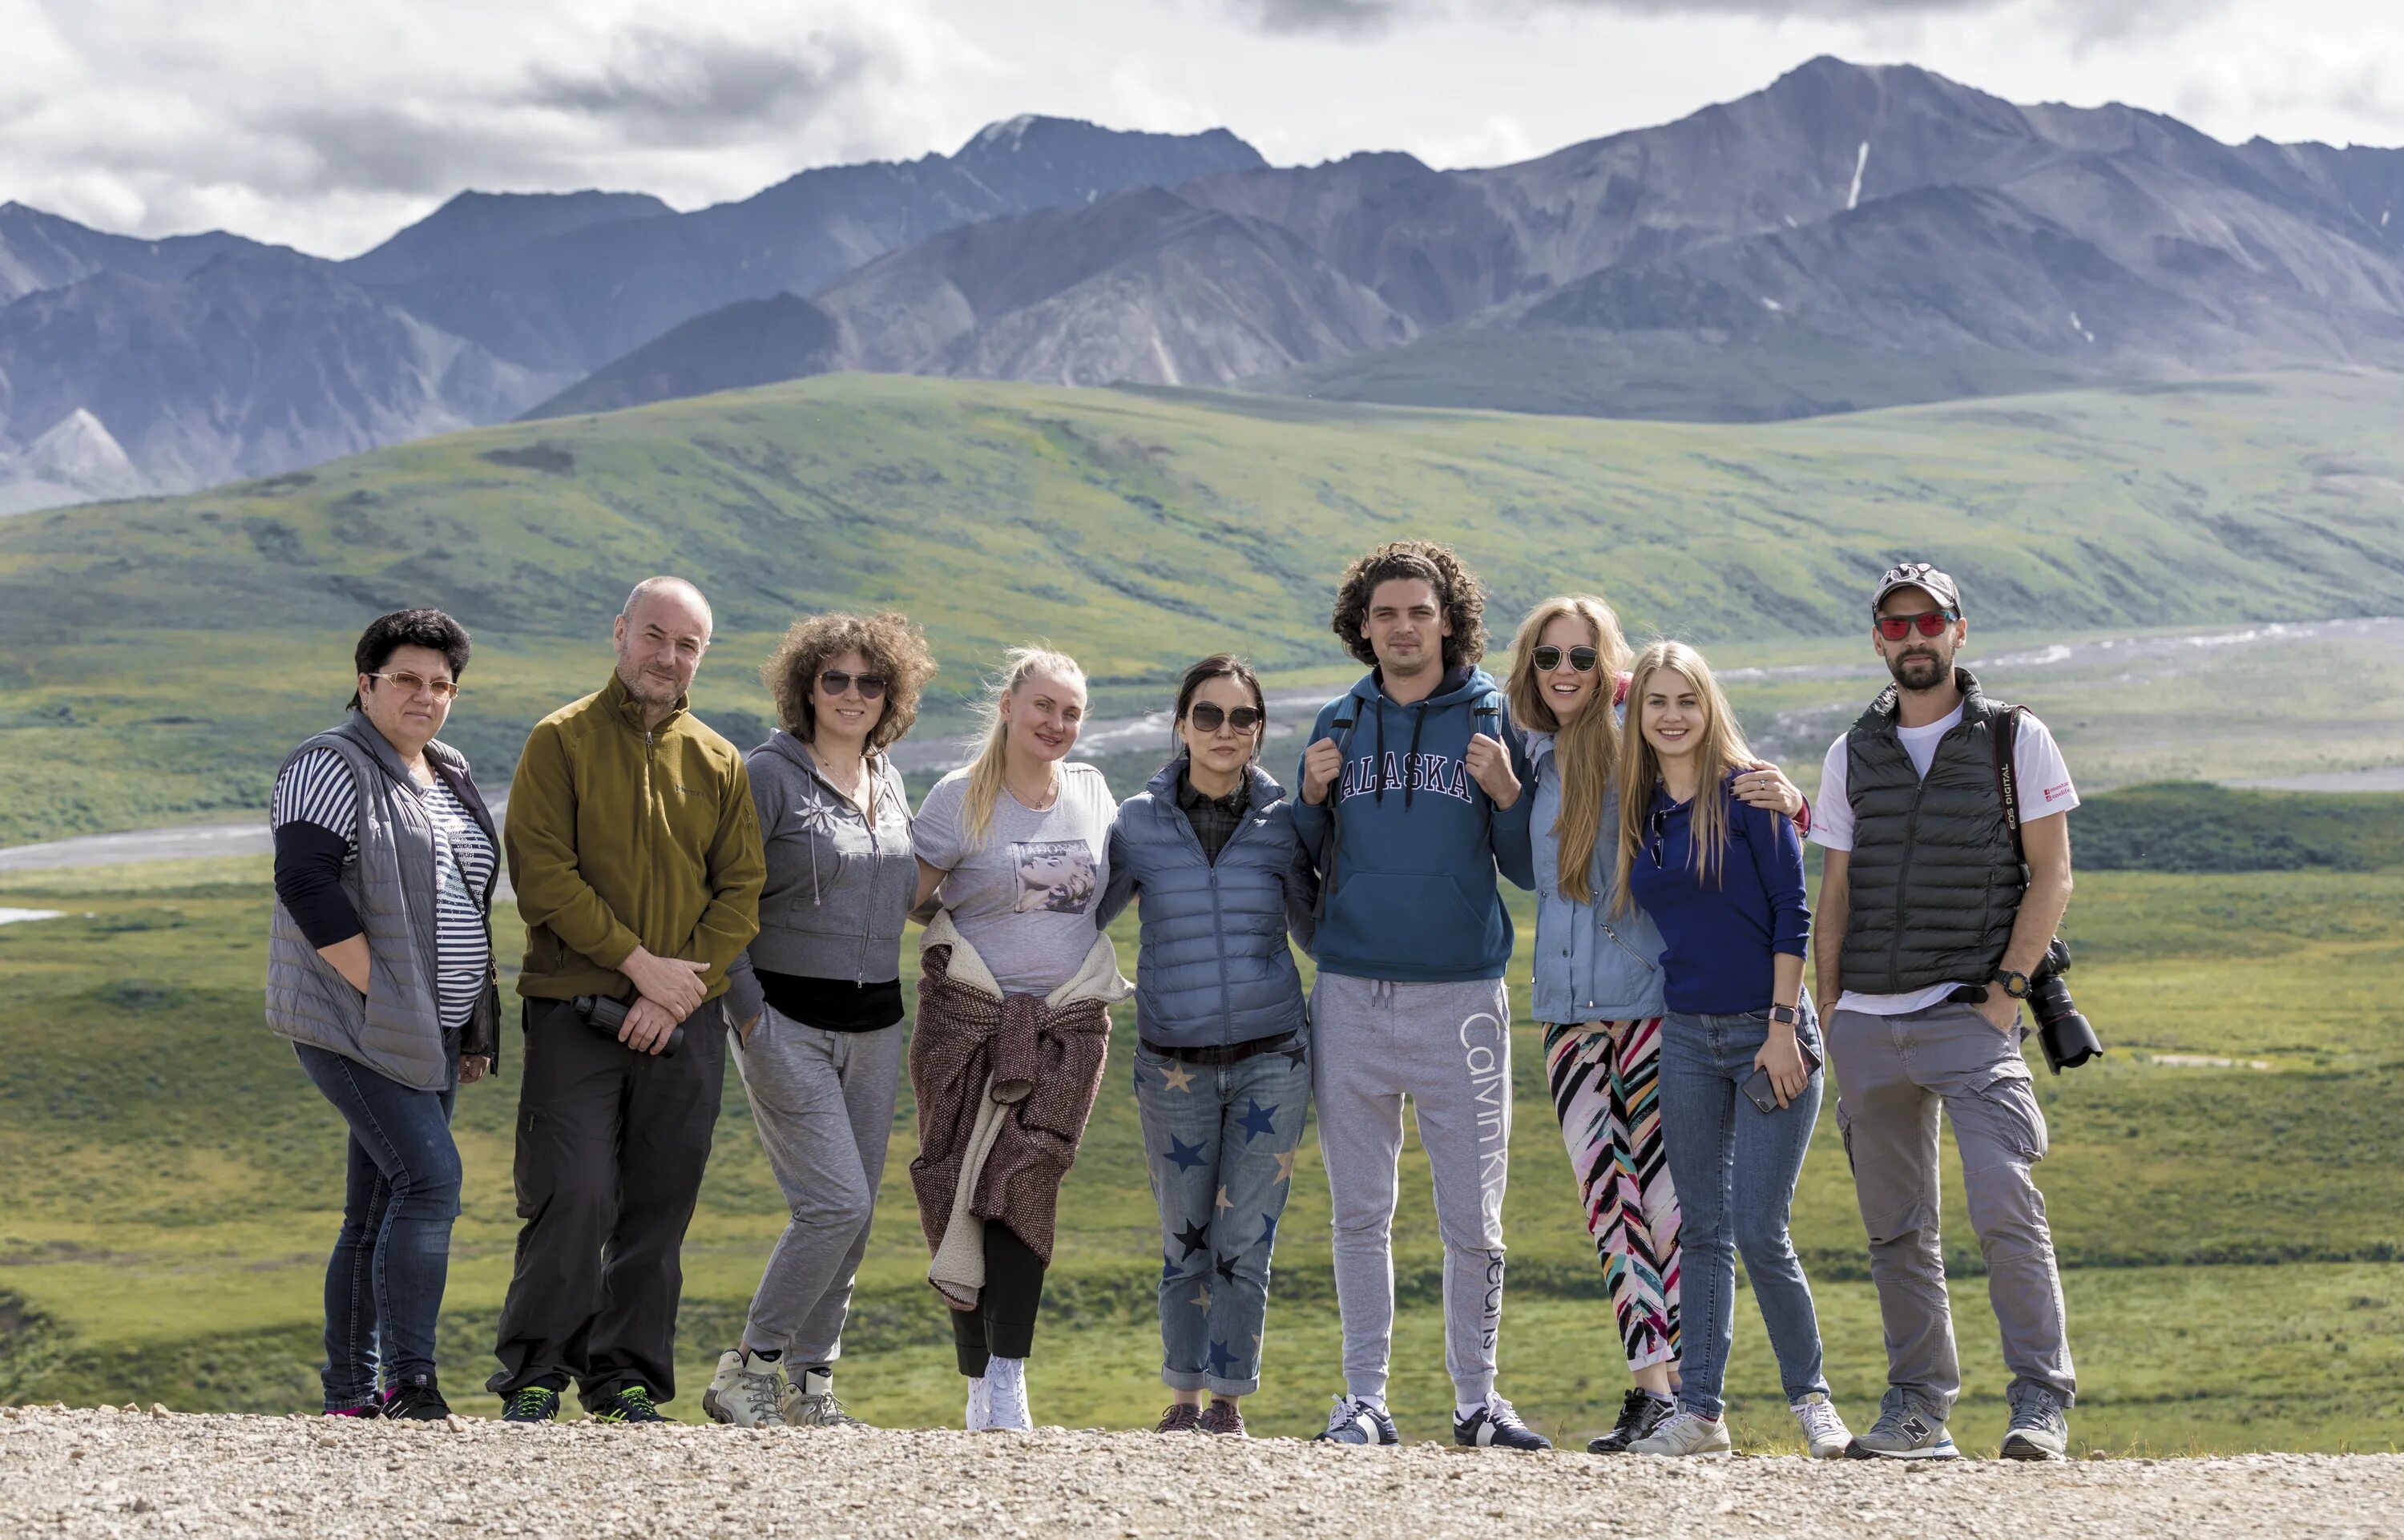 Аляска путешественники. Семья с Аляски. Жизнь на Аляске. Аляска люди. Покорители Аляски.